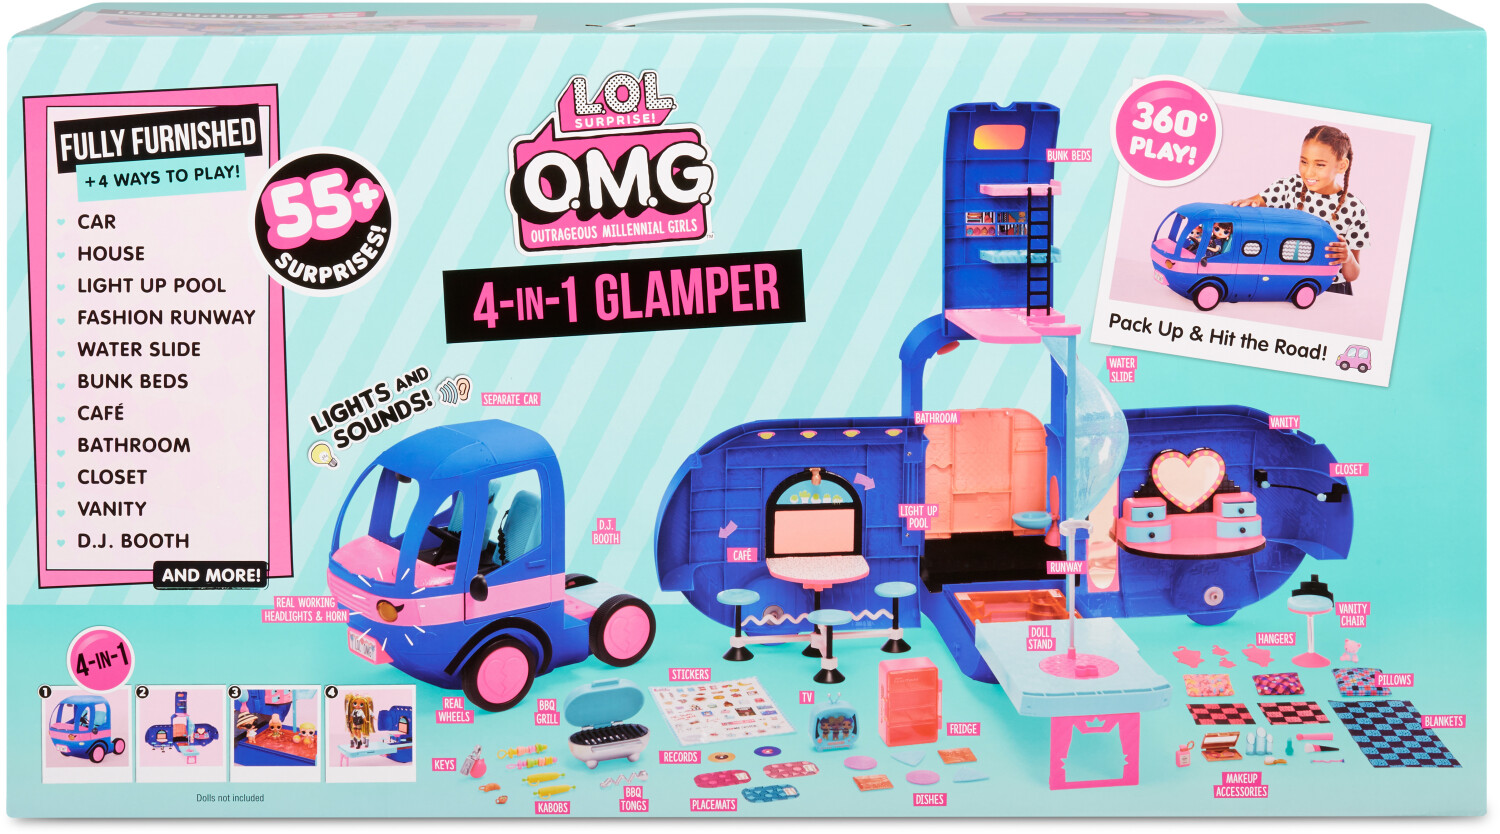 L.O.L. SURPRISE OMG Glamper (Bleu) - Camping Car poupées - L 90 x H 60cm  EUR 75,00 - PicClick FR